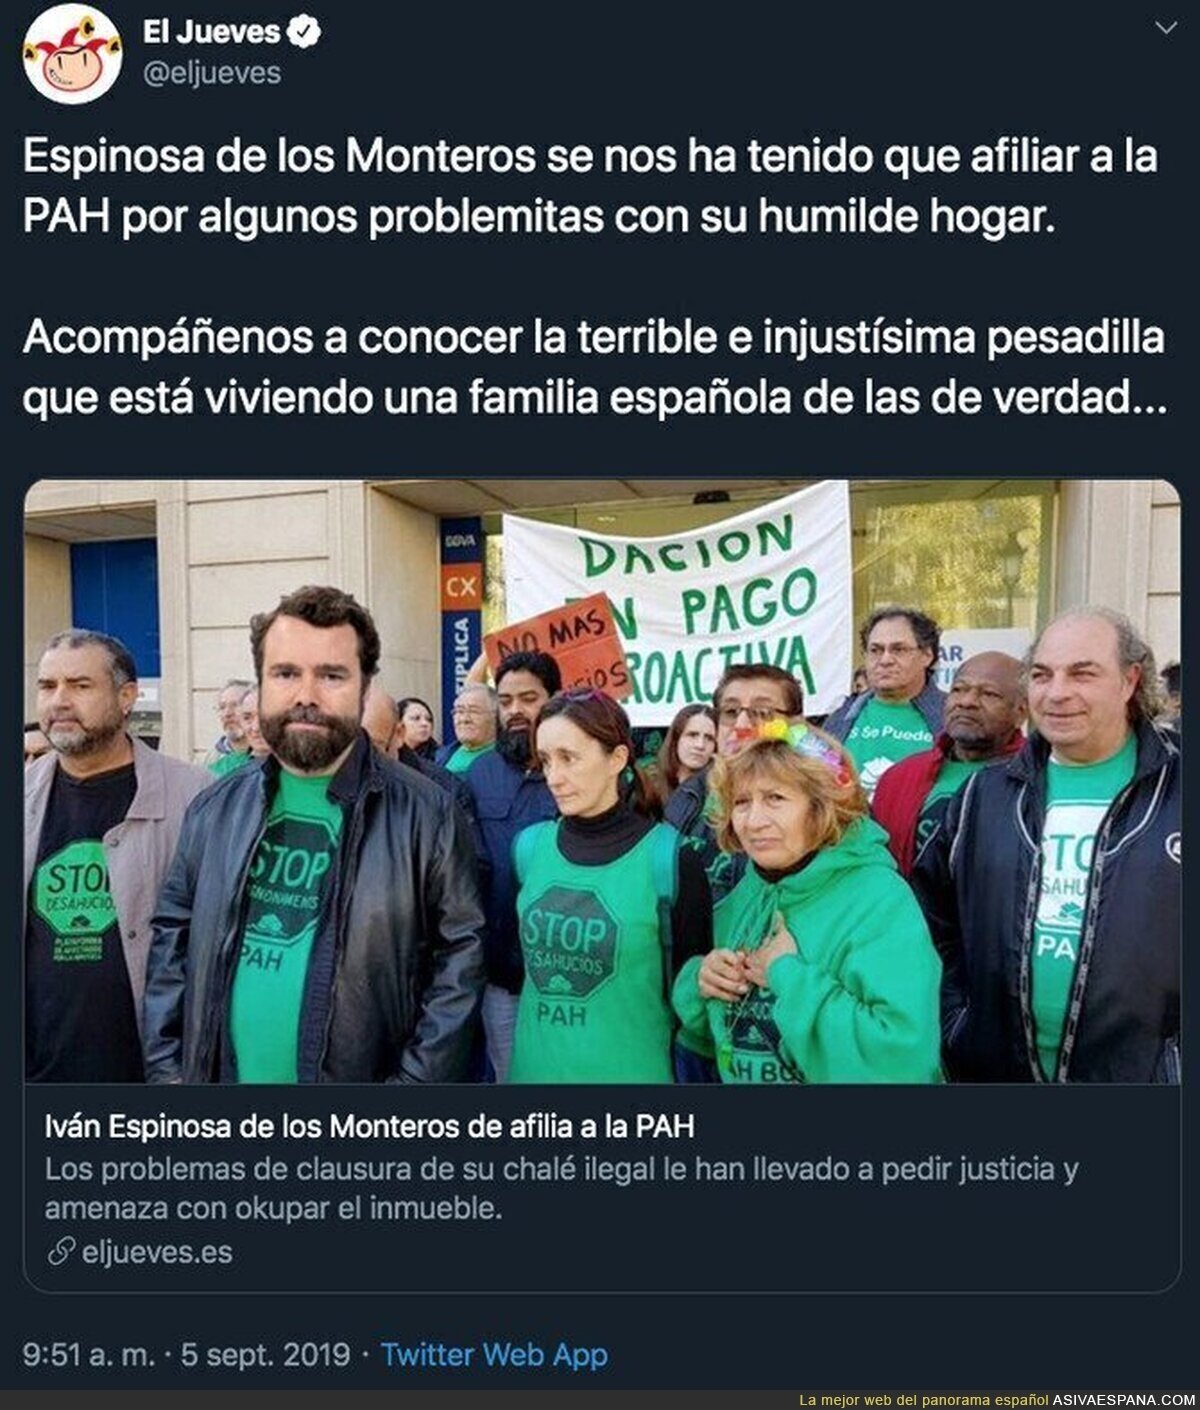 Mucho ánimo a Espinosa de los Monteros